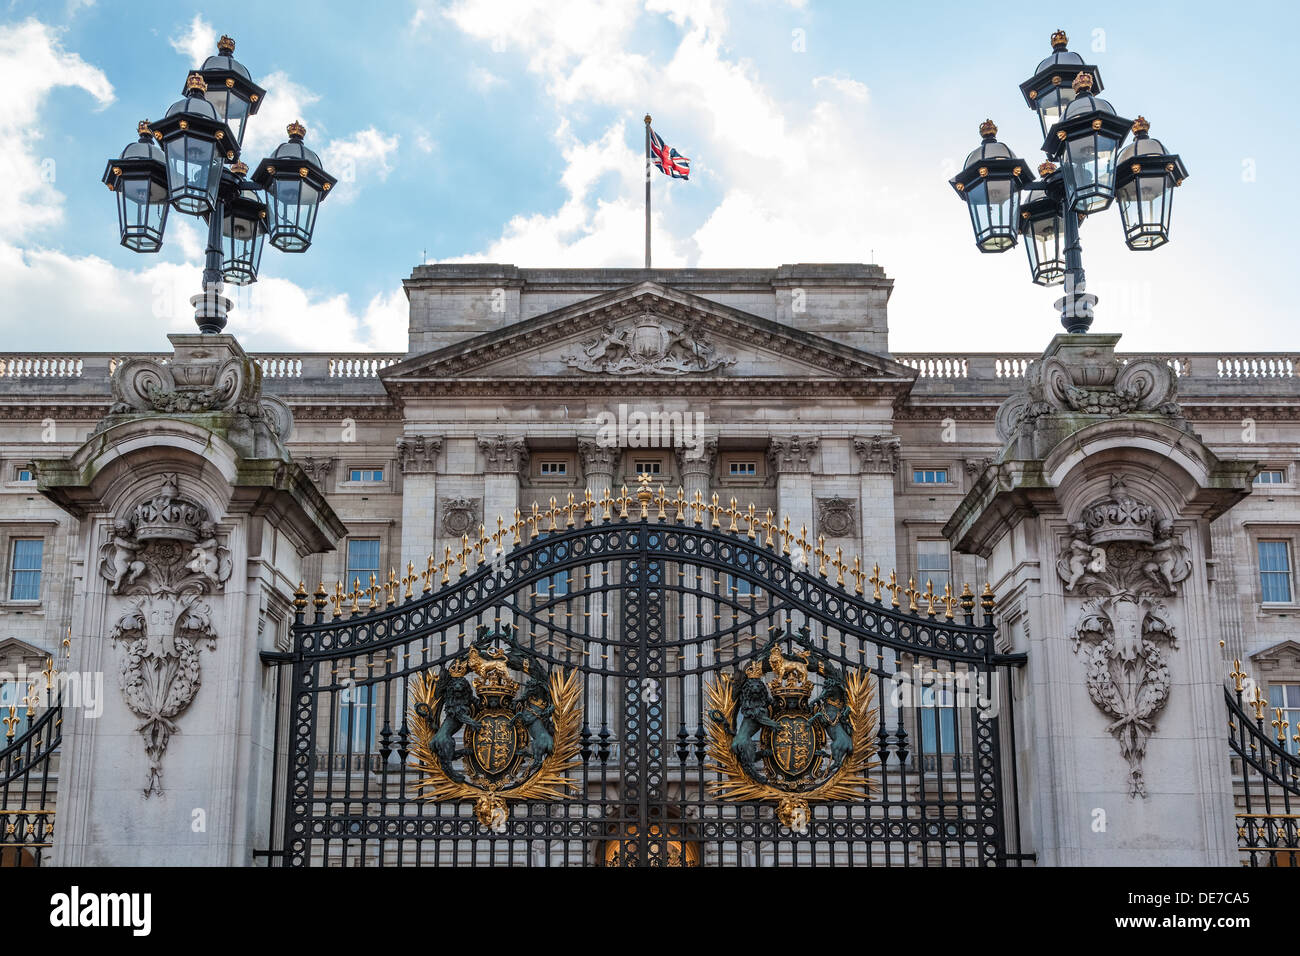 The entrance gate and Buckingham Palace, London, UK Stock Photo